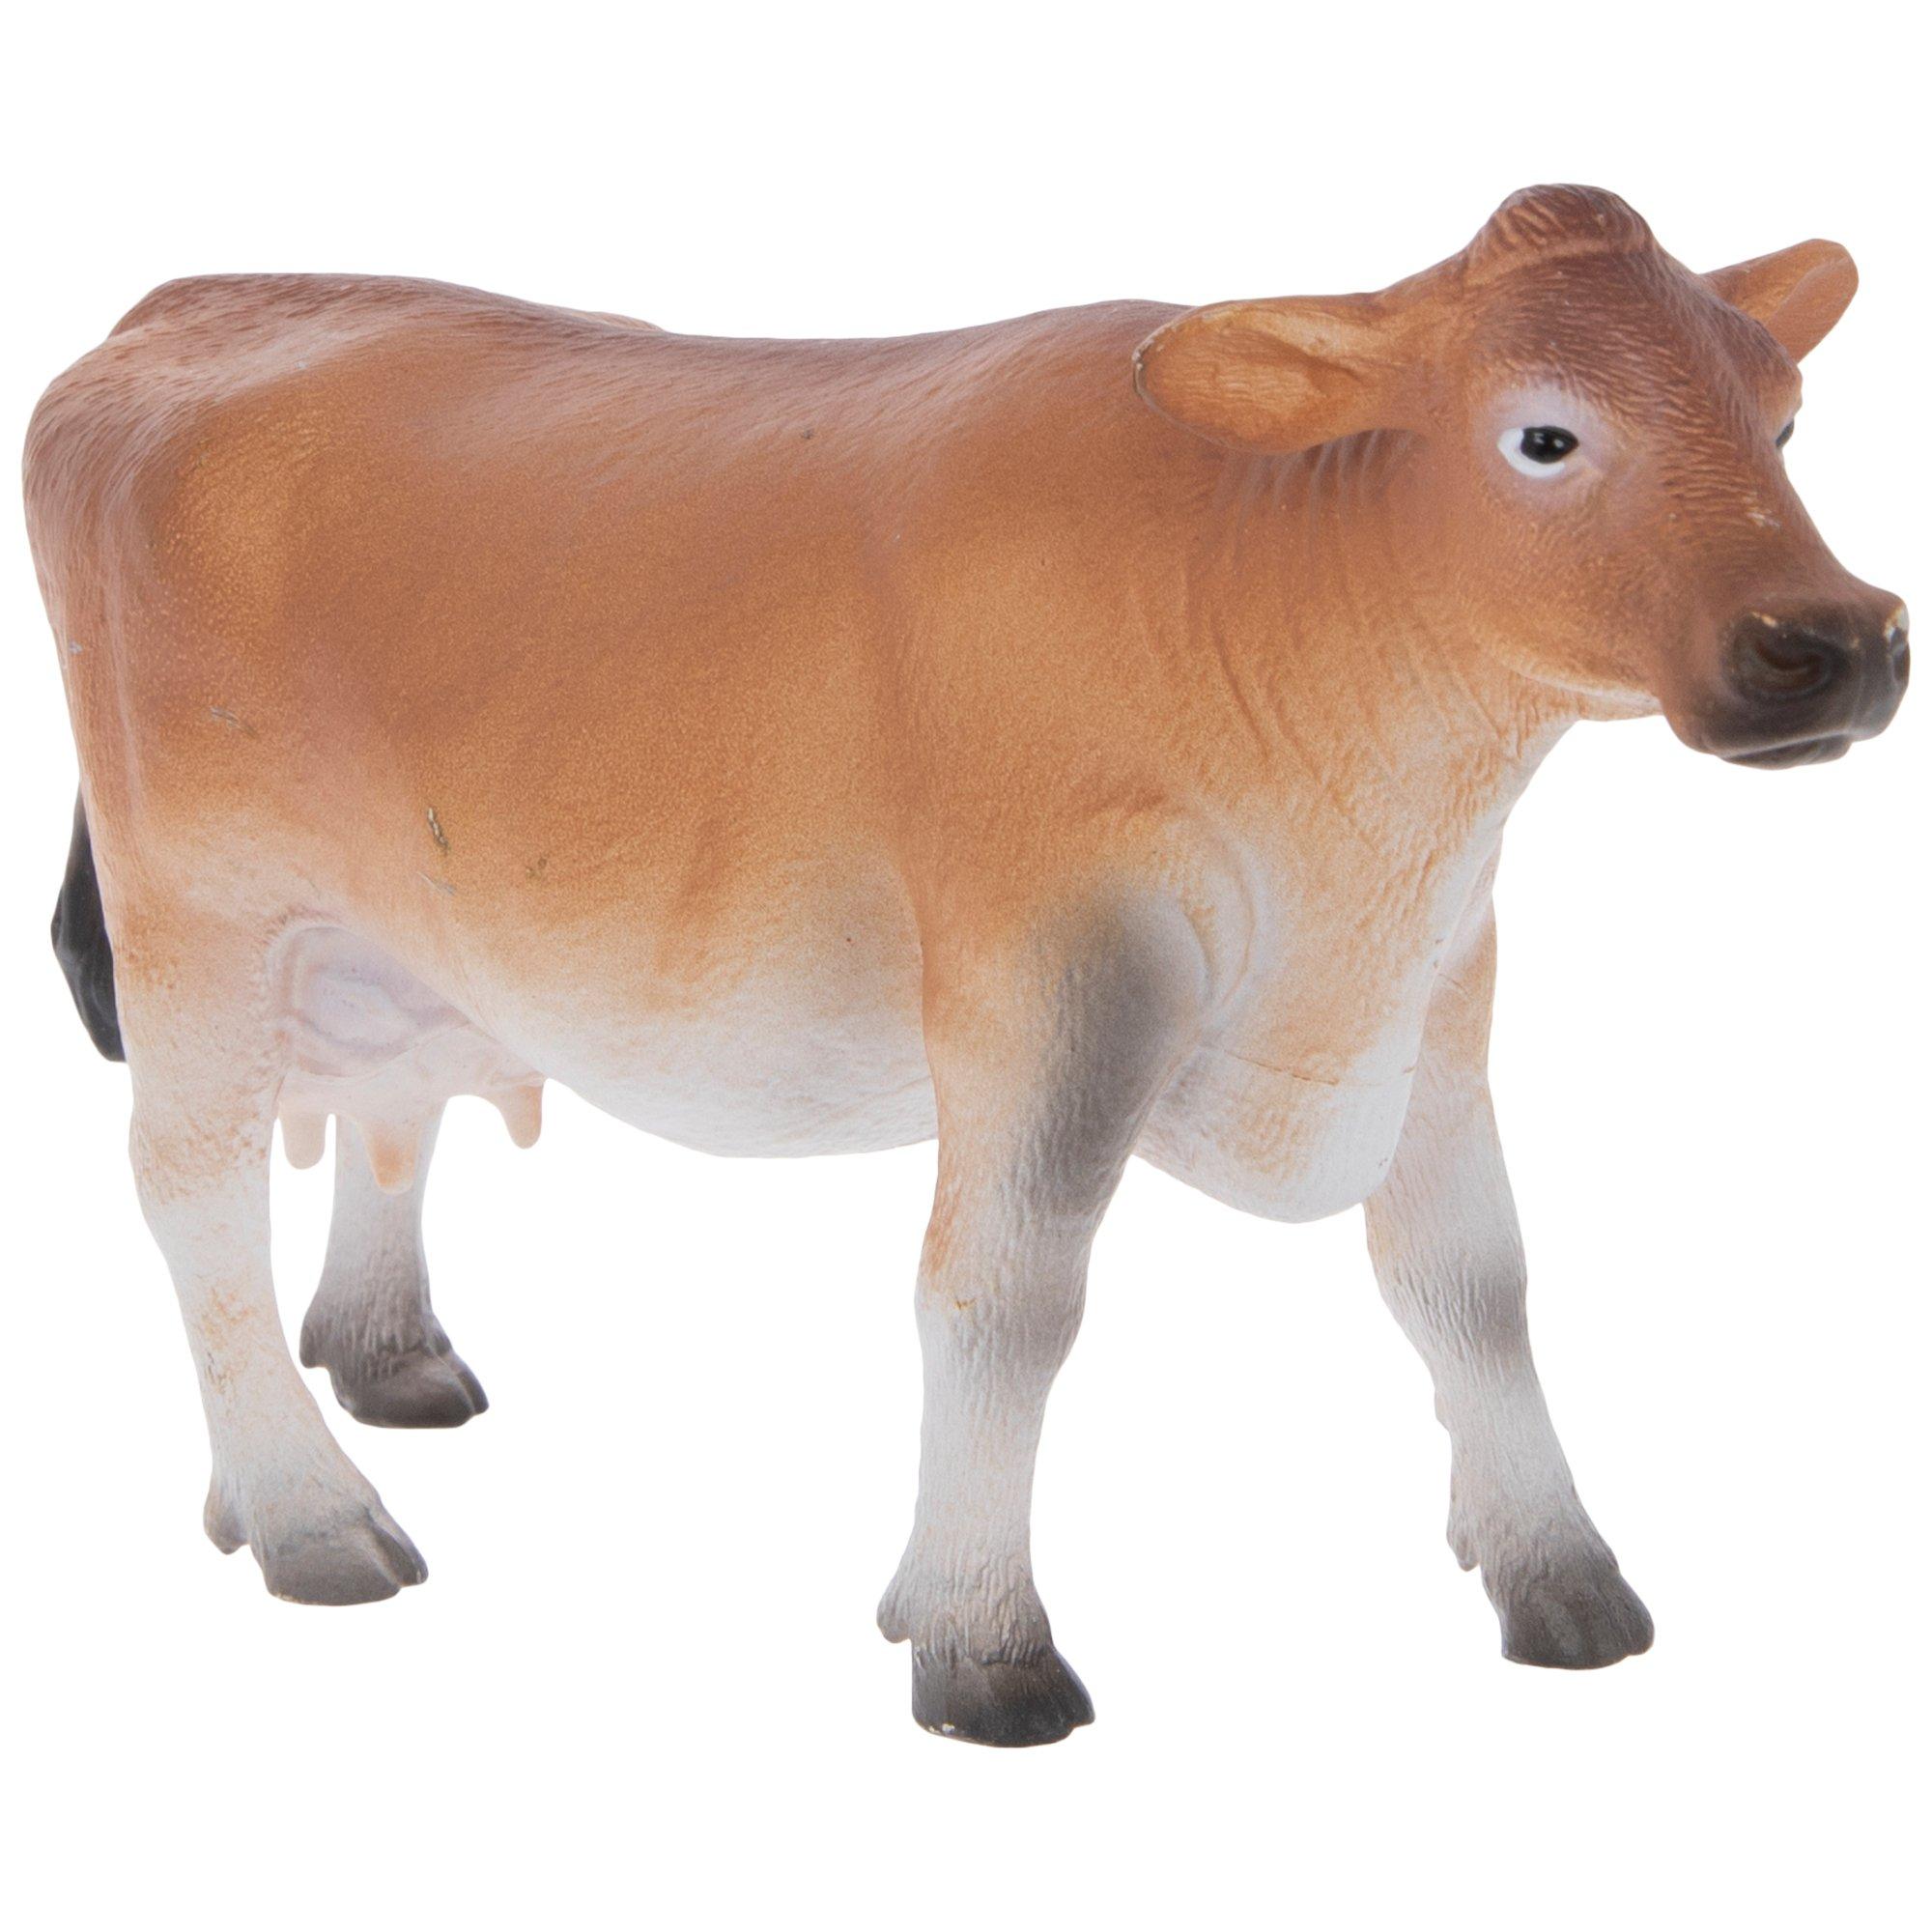 Stuffed Jersey Cow